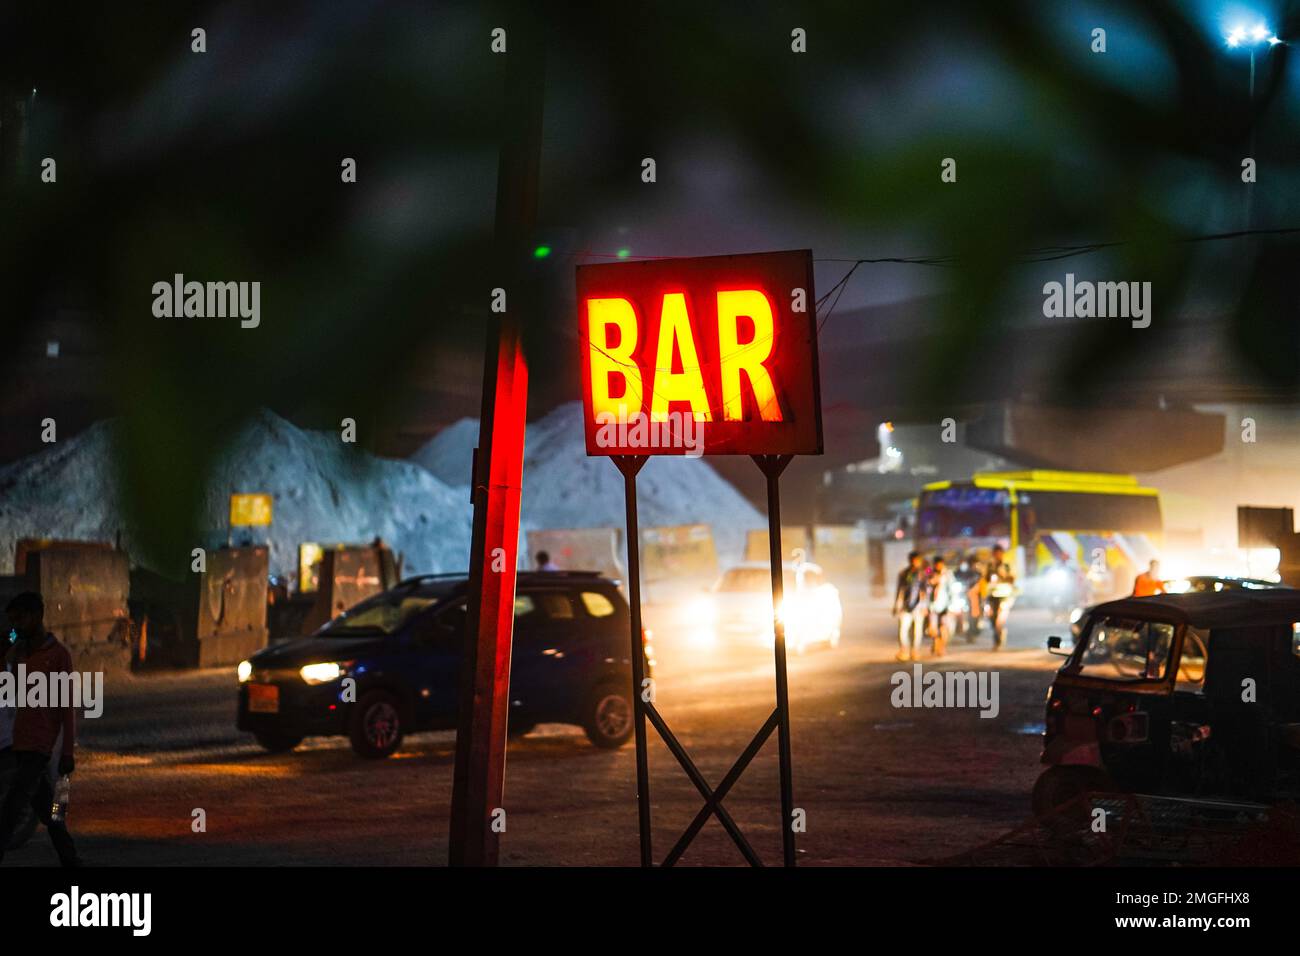 Rote Schildertafel mit Barbeleuchtung, Neonschild für eine Bar, Neonschild für Bar, Neonschild FÜR BAR beleuchtet nachts die Tür eines Getränkebereichs, ein Ort Stockfoto